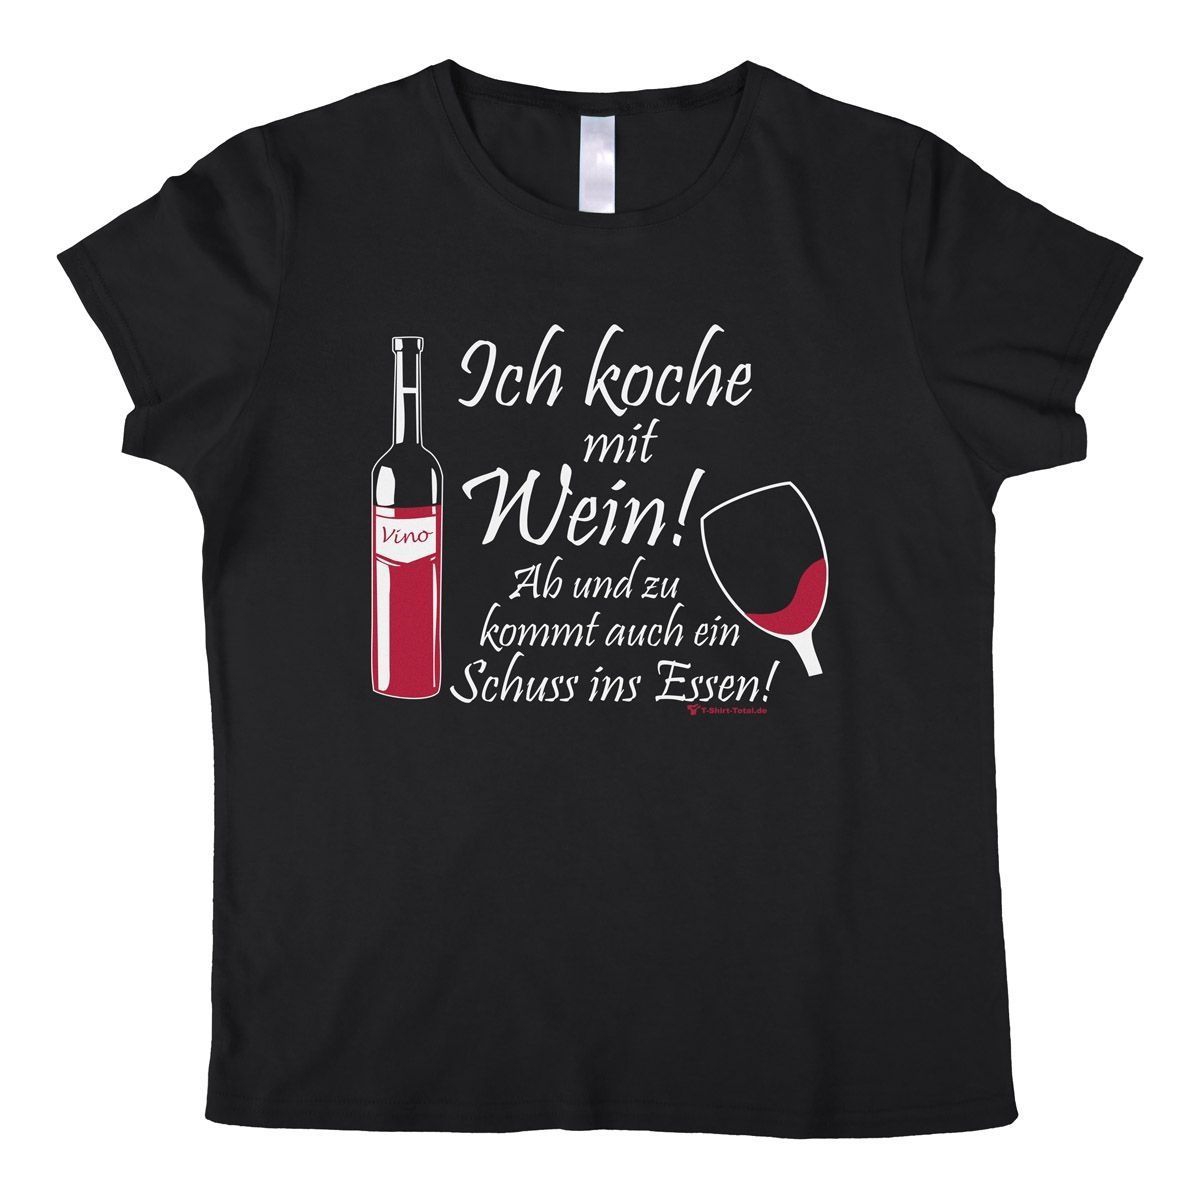 Koche mit Wein Woman T-Shirt schwarz Large